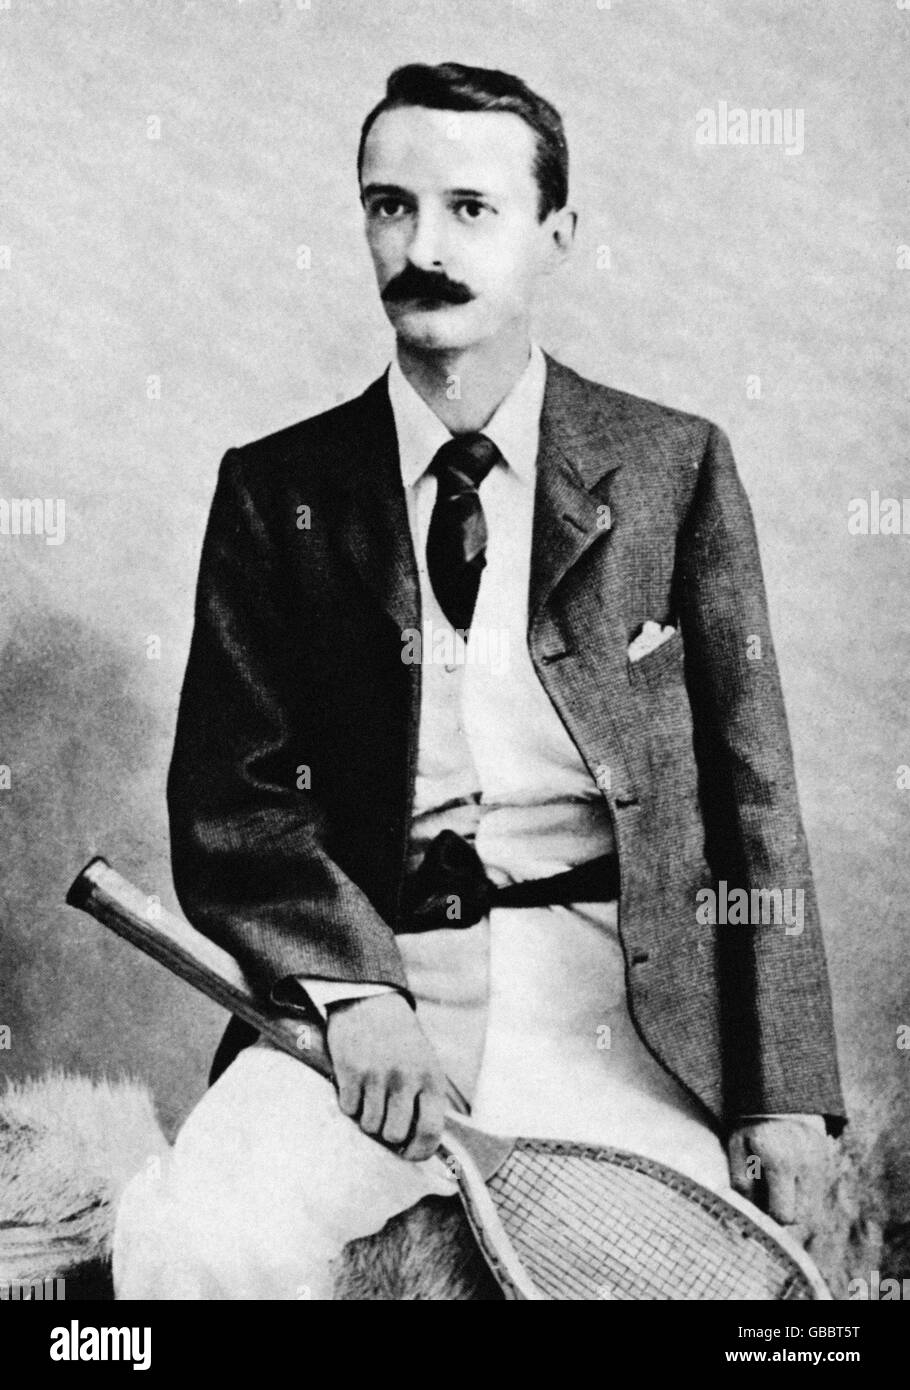 Tennis, Campionati di Wimbledon. Wilfred Baddeley, campione maschile di single nel 1891 e nel 1892 Foto Stock